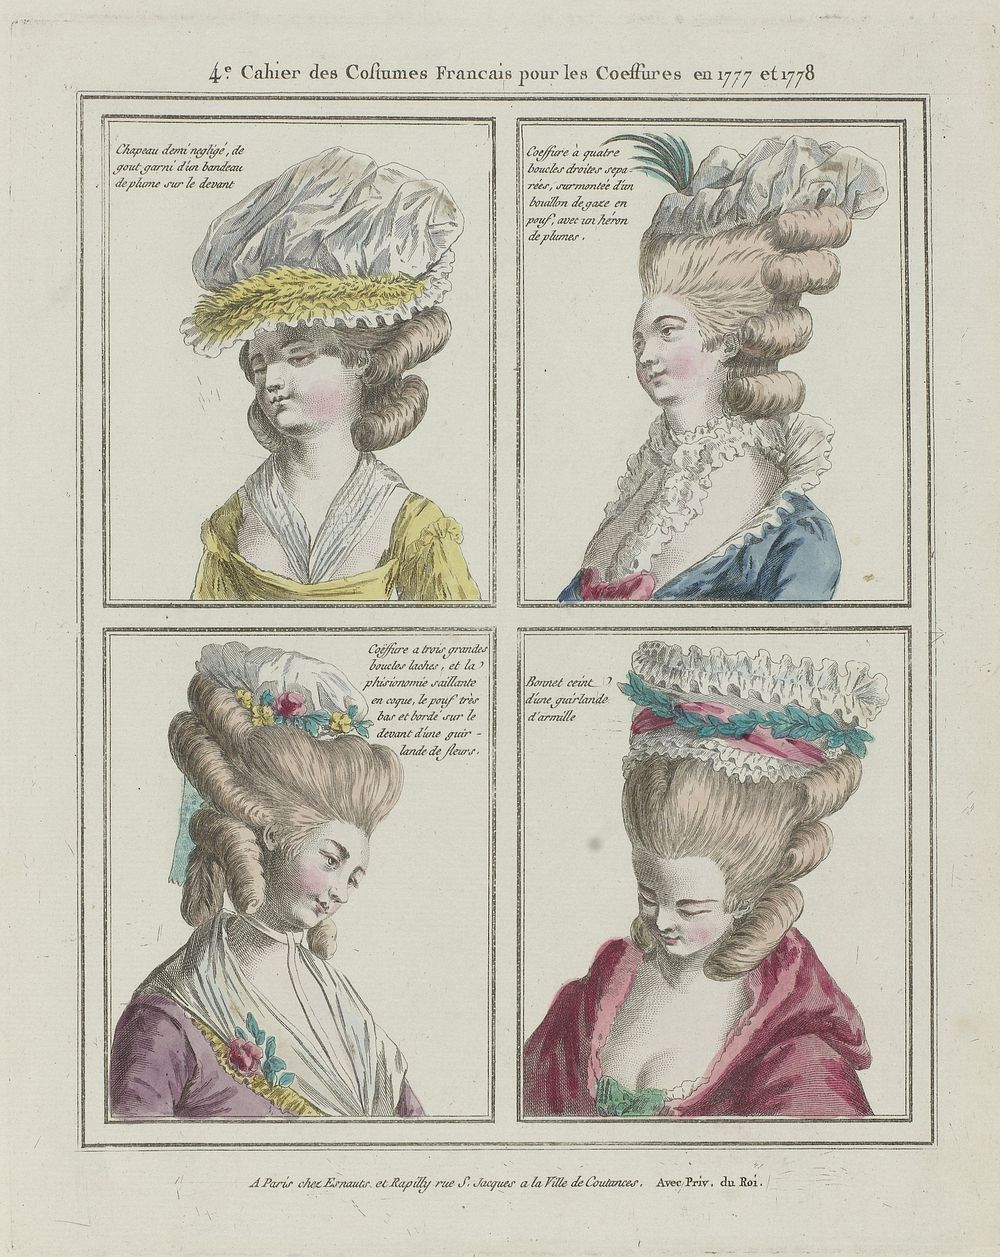 Gallerie des Modes et Costumes Français, 1777-1778, D 19 : Chapeau demi négligé (...) (1778) by anonymous and Esnauts and…